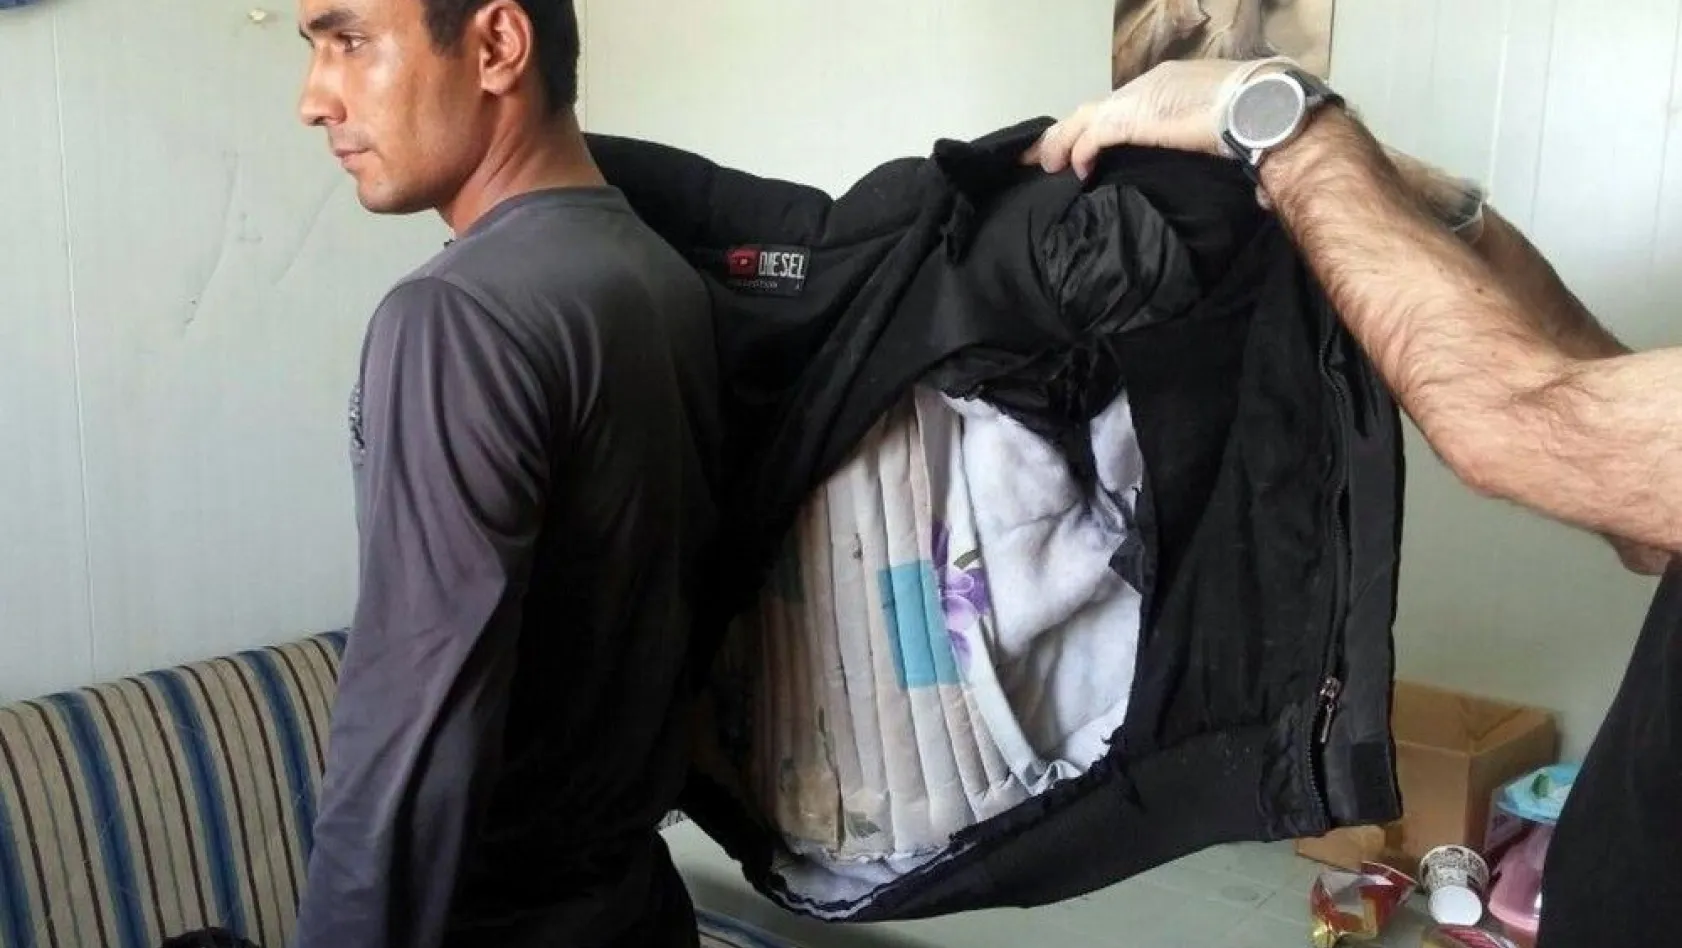 Afgan yolcunun montuna gizlediği uyuşturucu ele geçirildi
